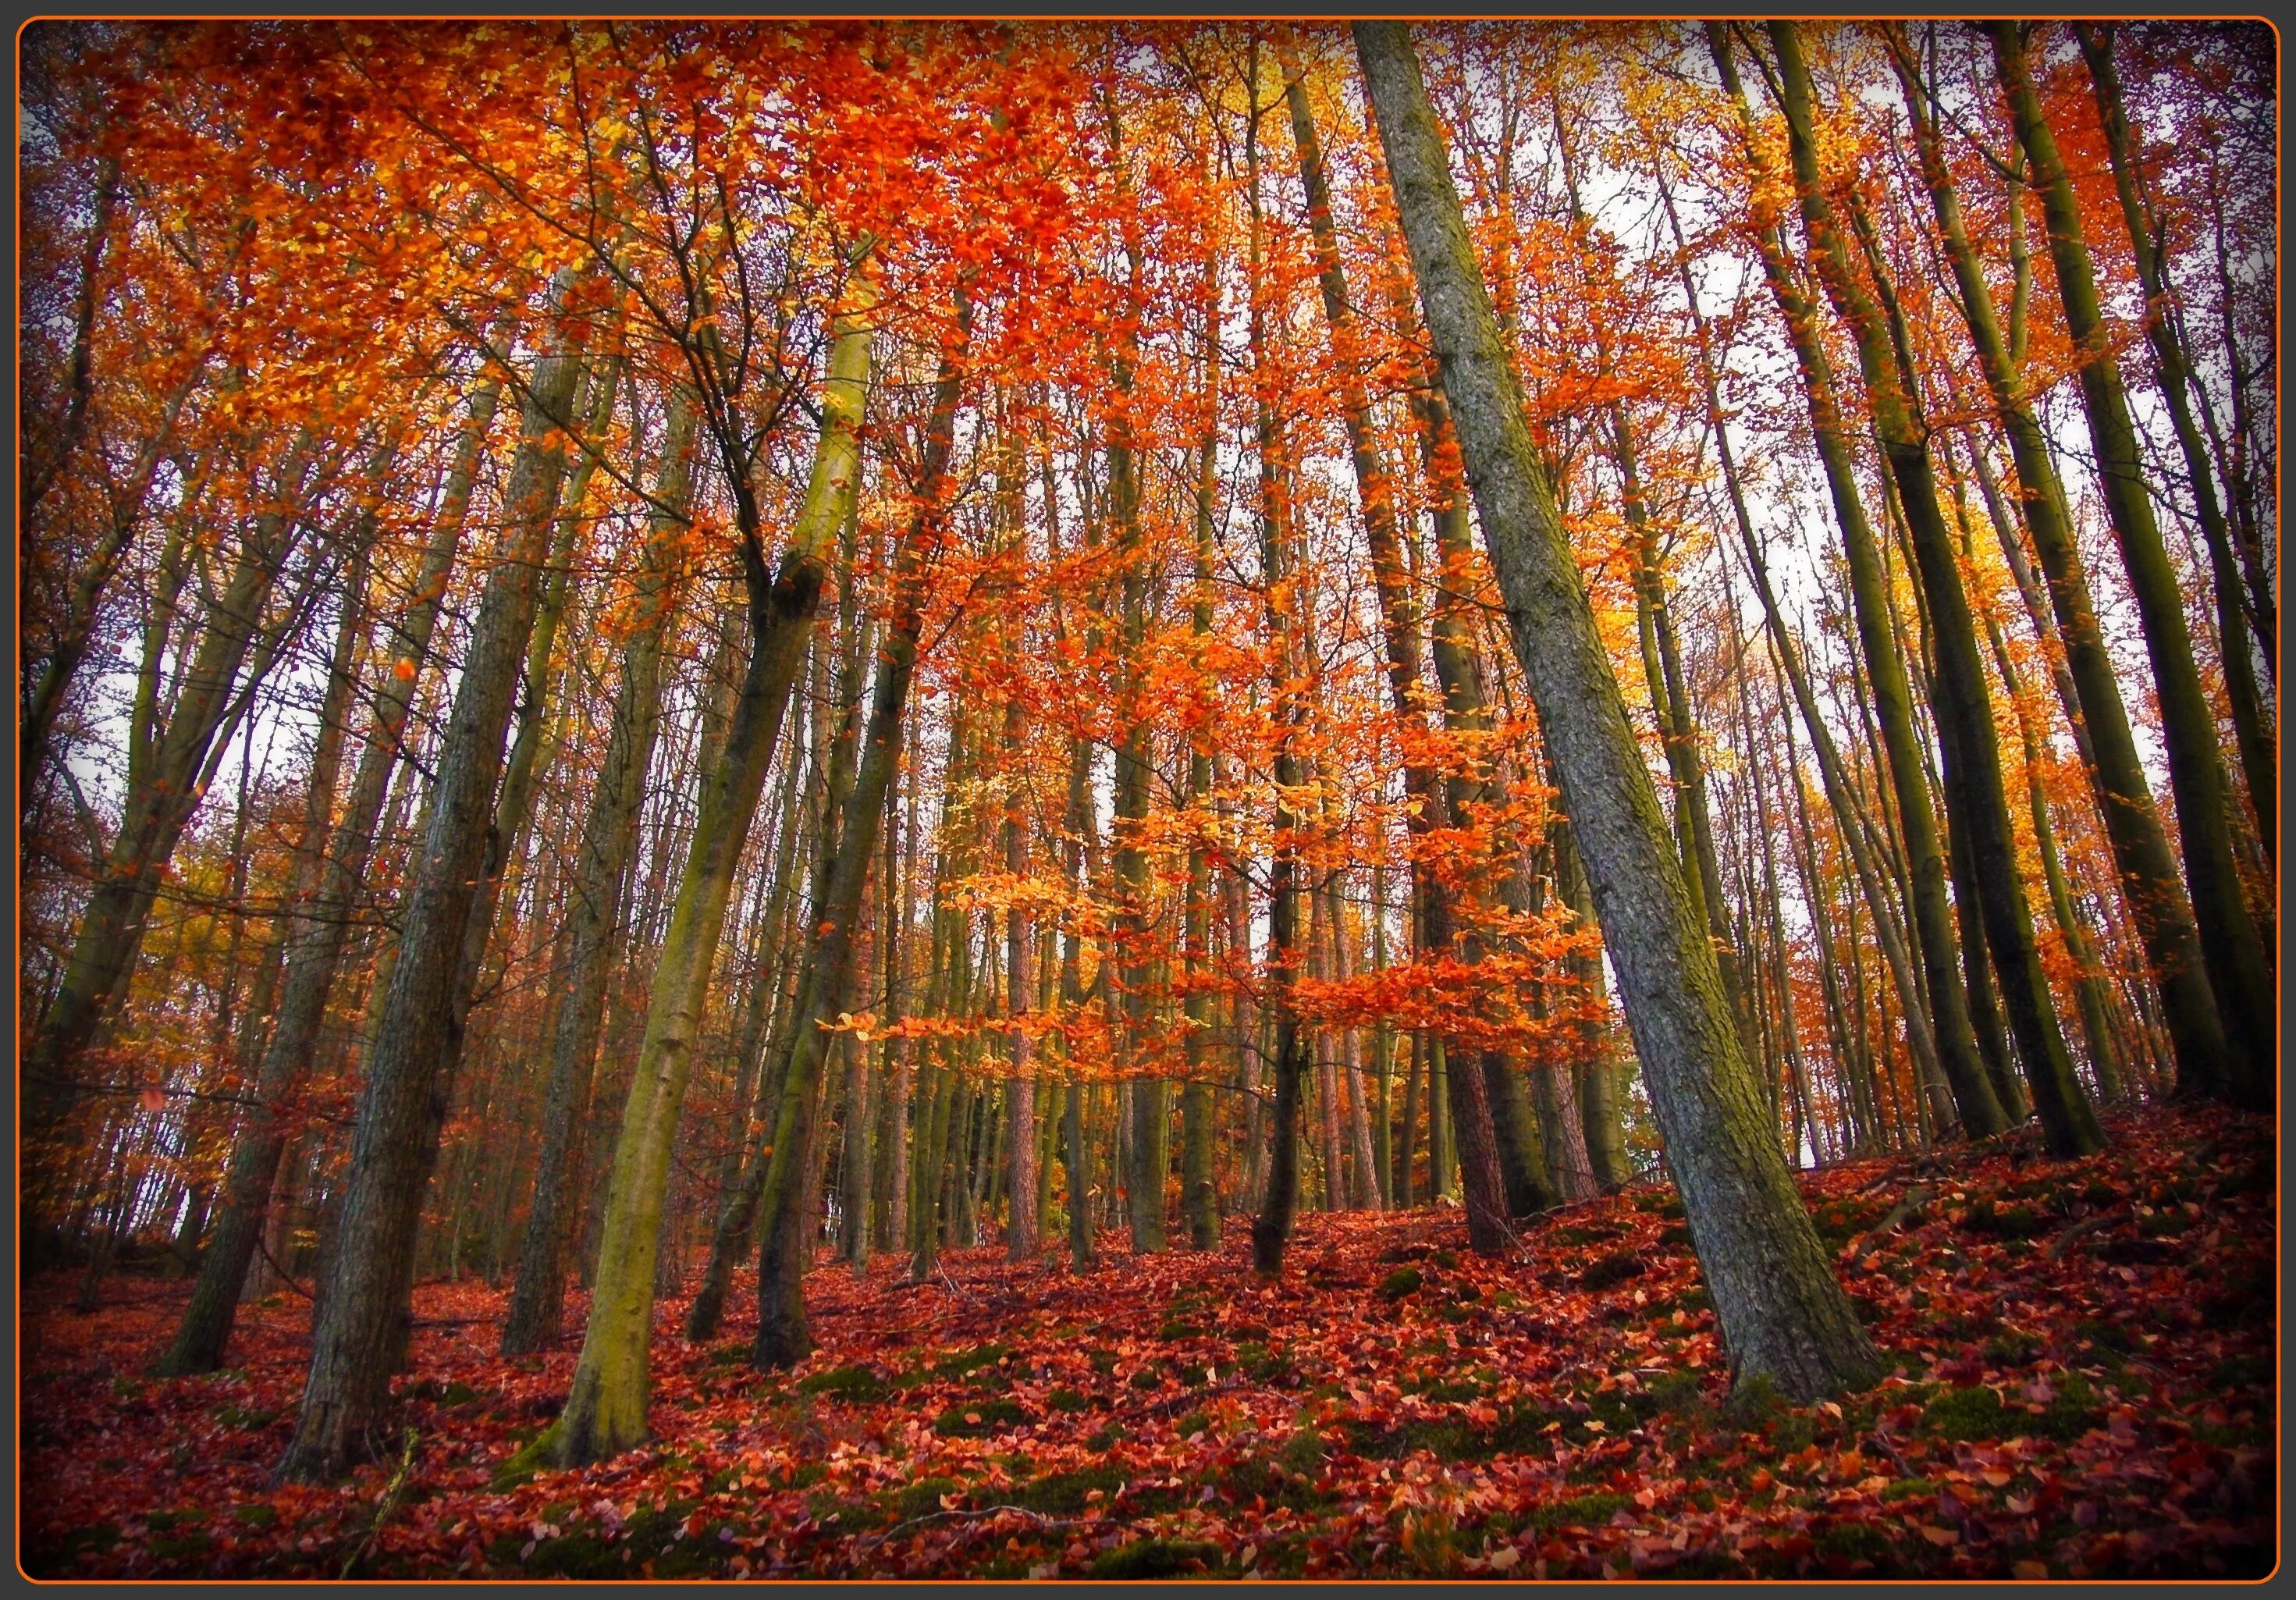 Может ли вас взволновать красота осеннего леса. Осенний лес местность. Картинки осень для профиля. Фото профиля осень. Осенний лес на обложку профиля.